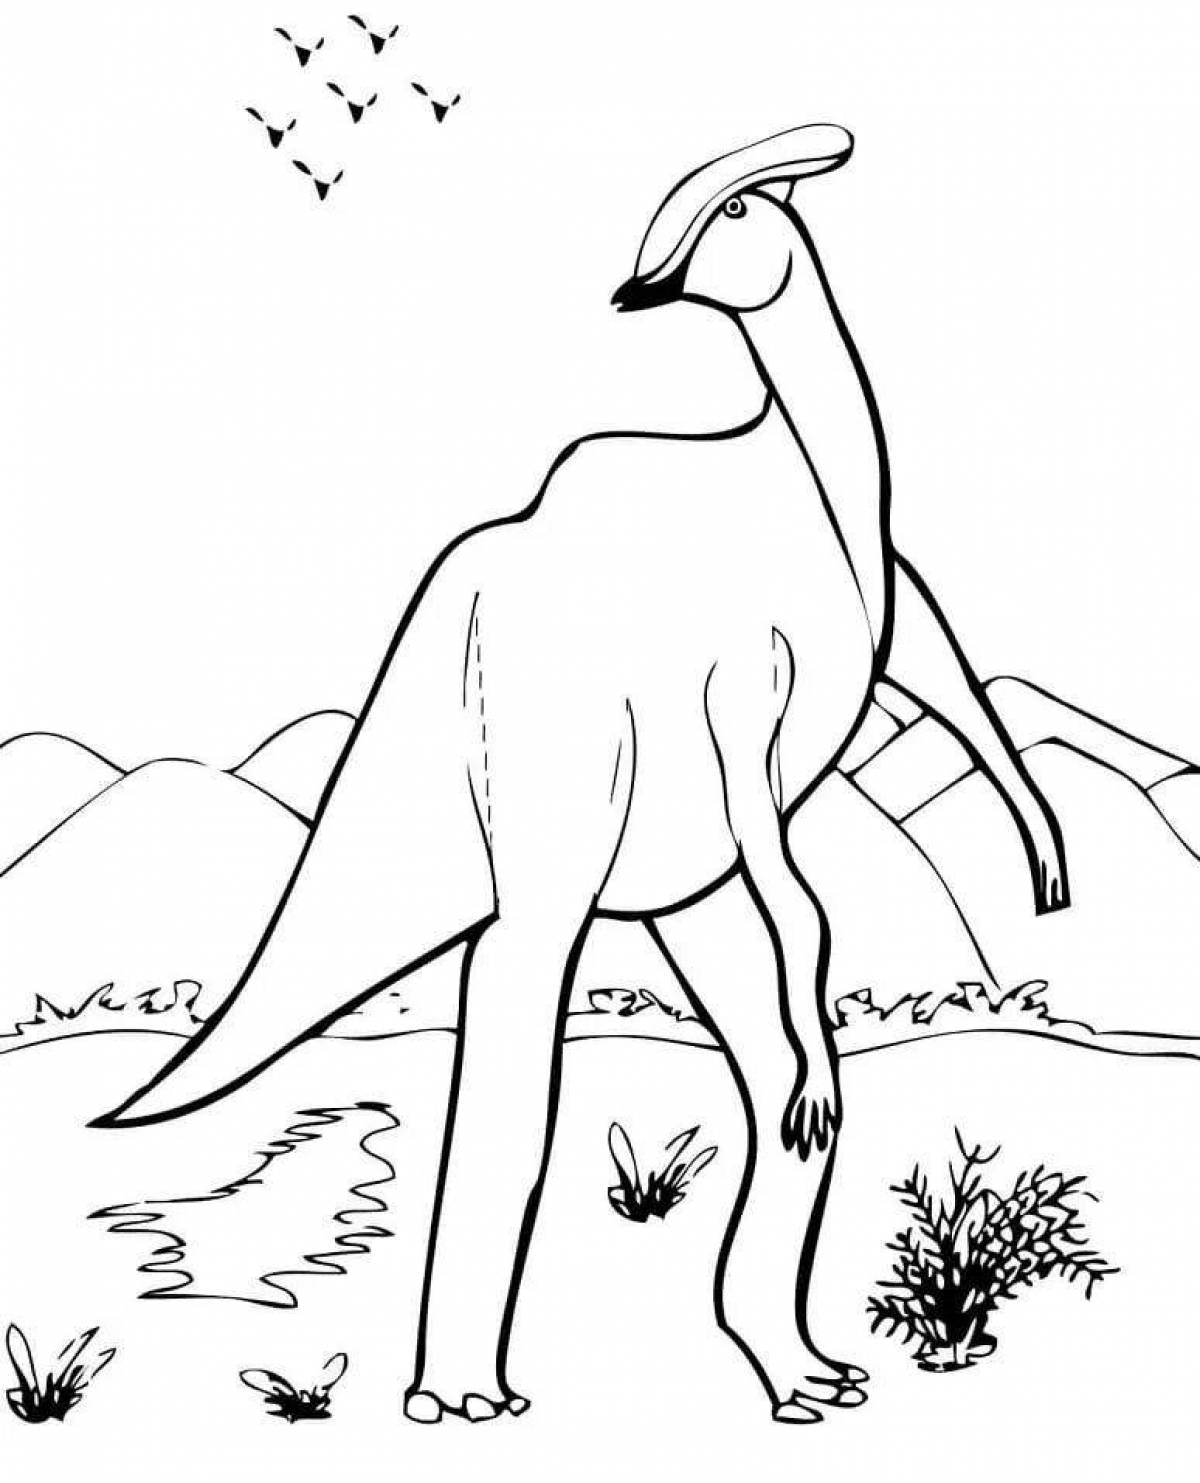 Coloring complex parasaurolophus